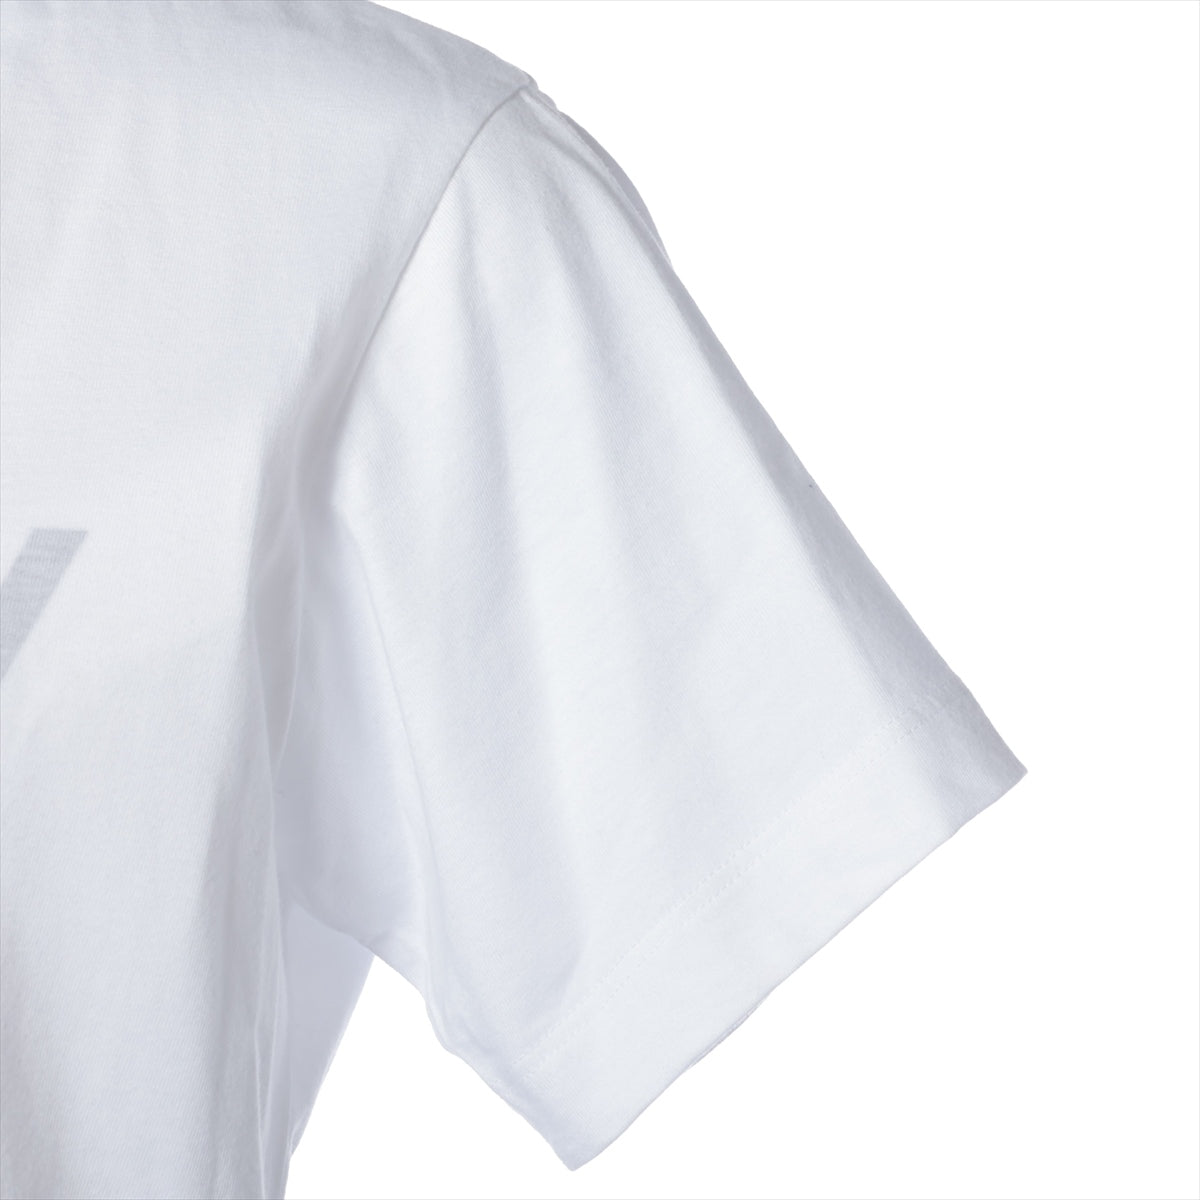 ルイヴィトン 20SS コットン Tシャツ XS レディース ホワイト  RW201W